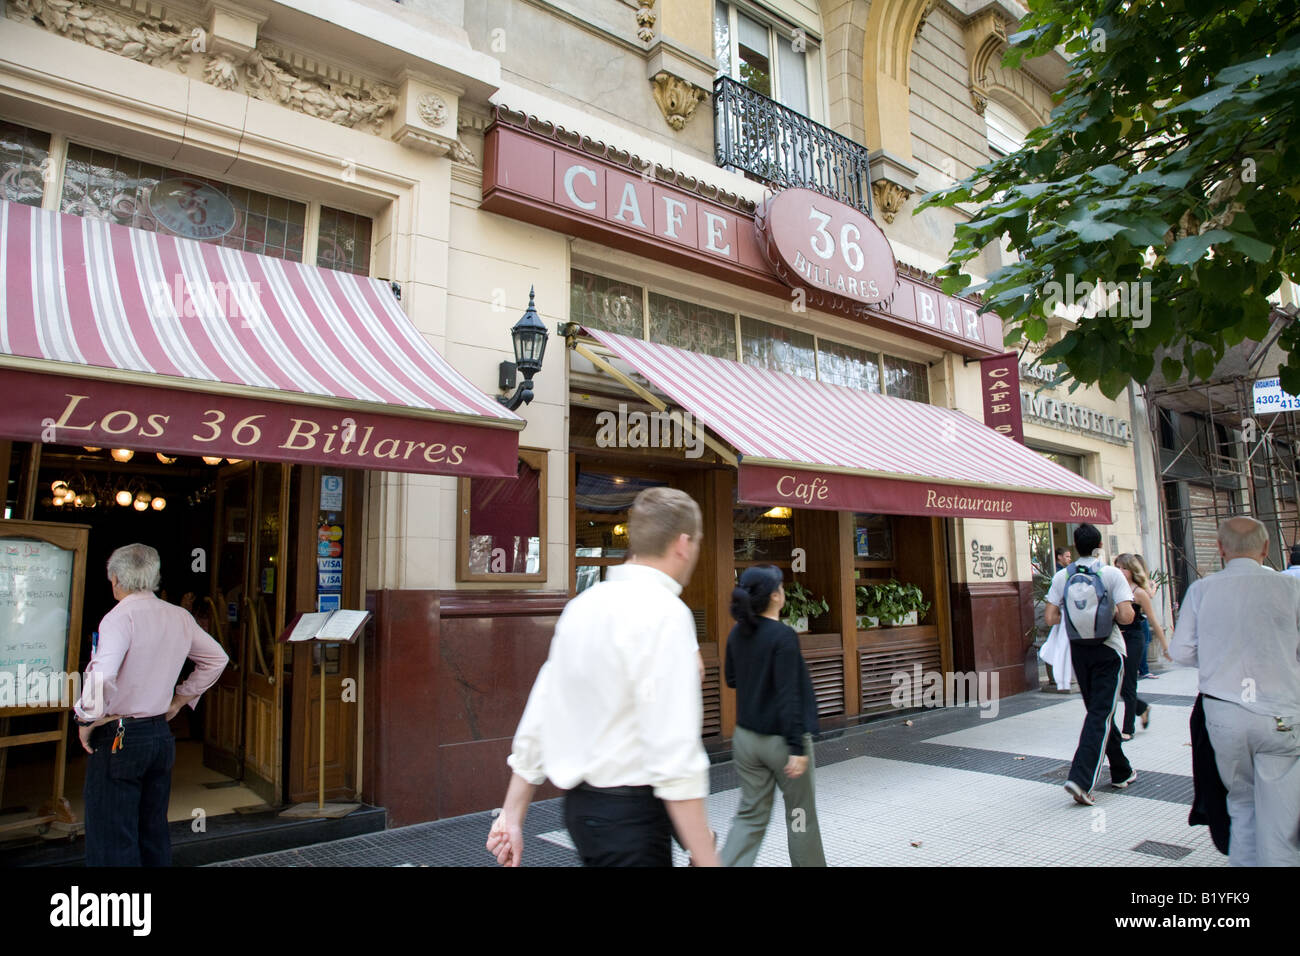 Los 36 Billares Cafe and Restaurant, Avenida de Mayo, Buenos Aires Stock Photo